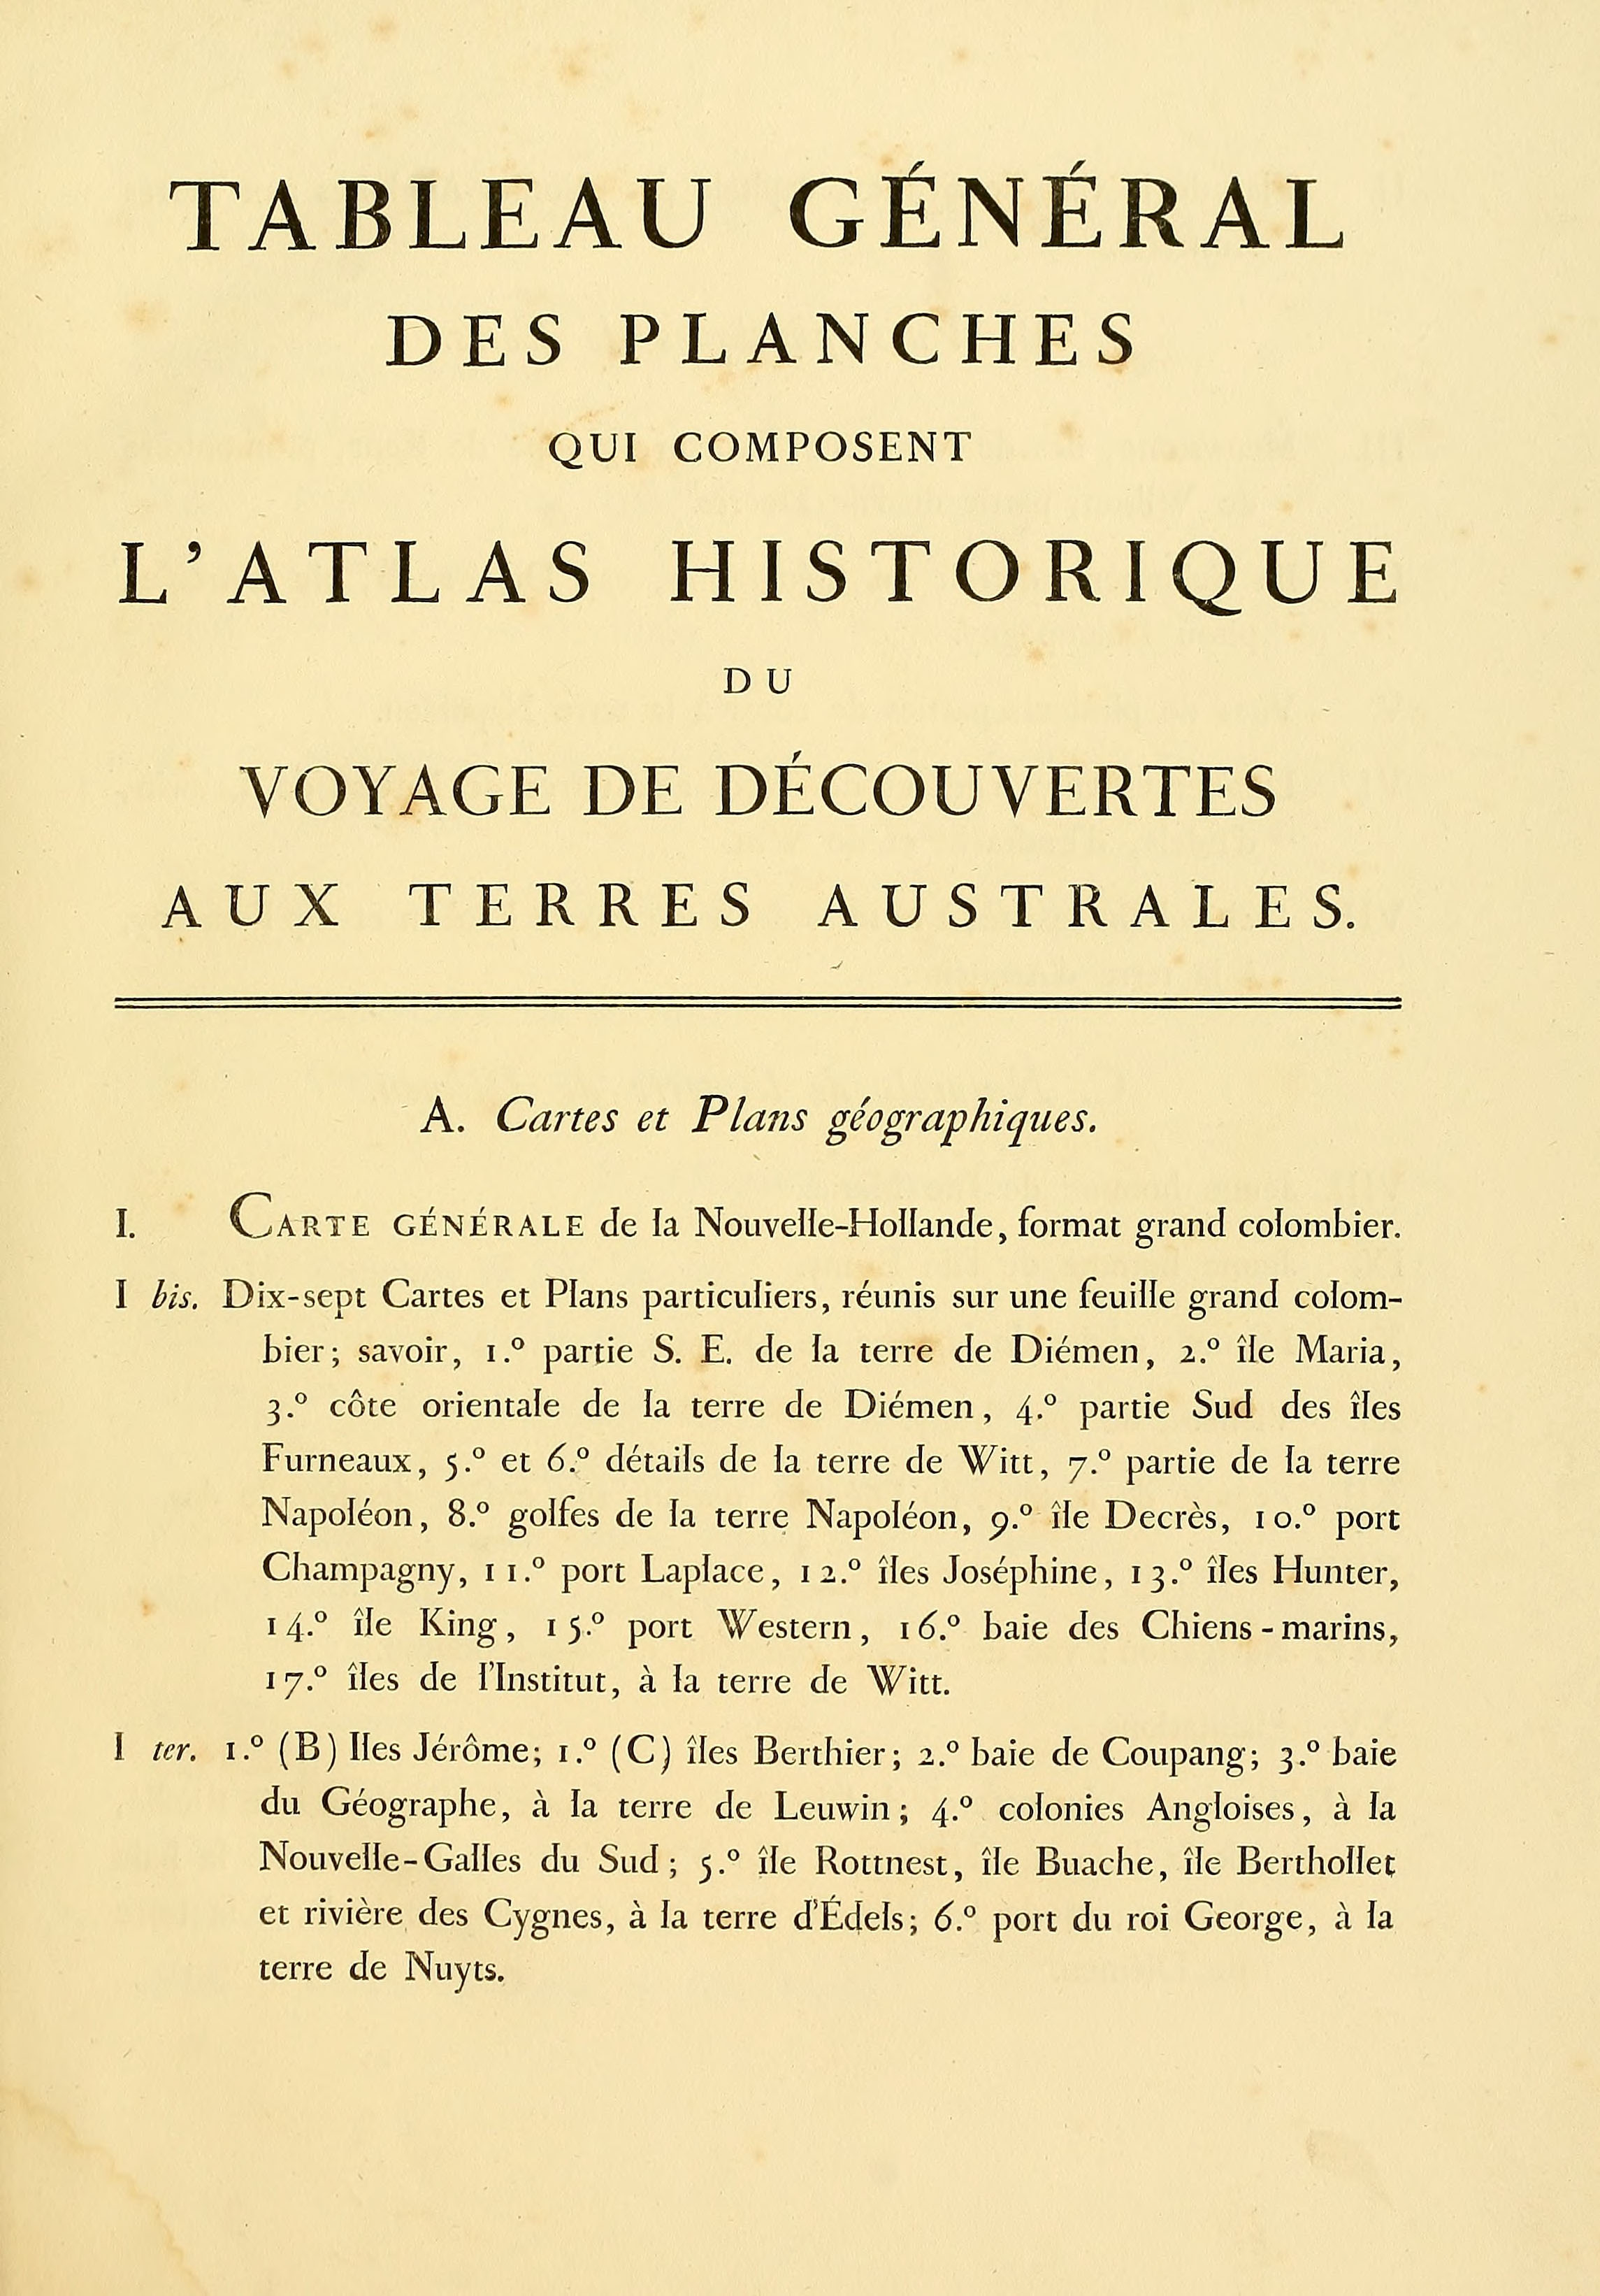 Atlas 1807, Lesueur et Petit, Voyage aux Terres Australes, index 1